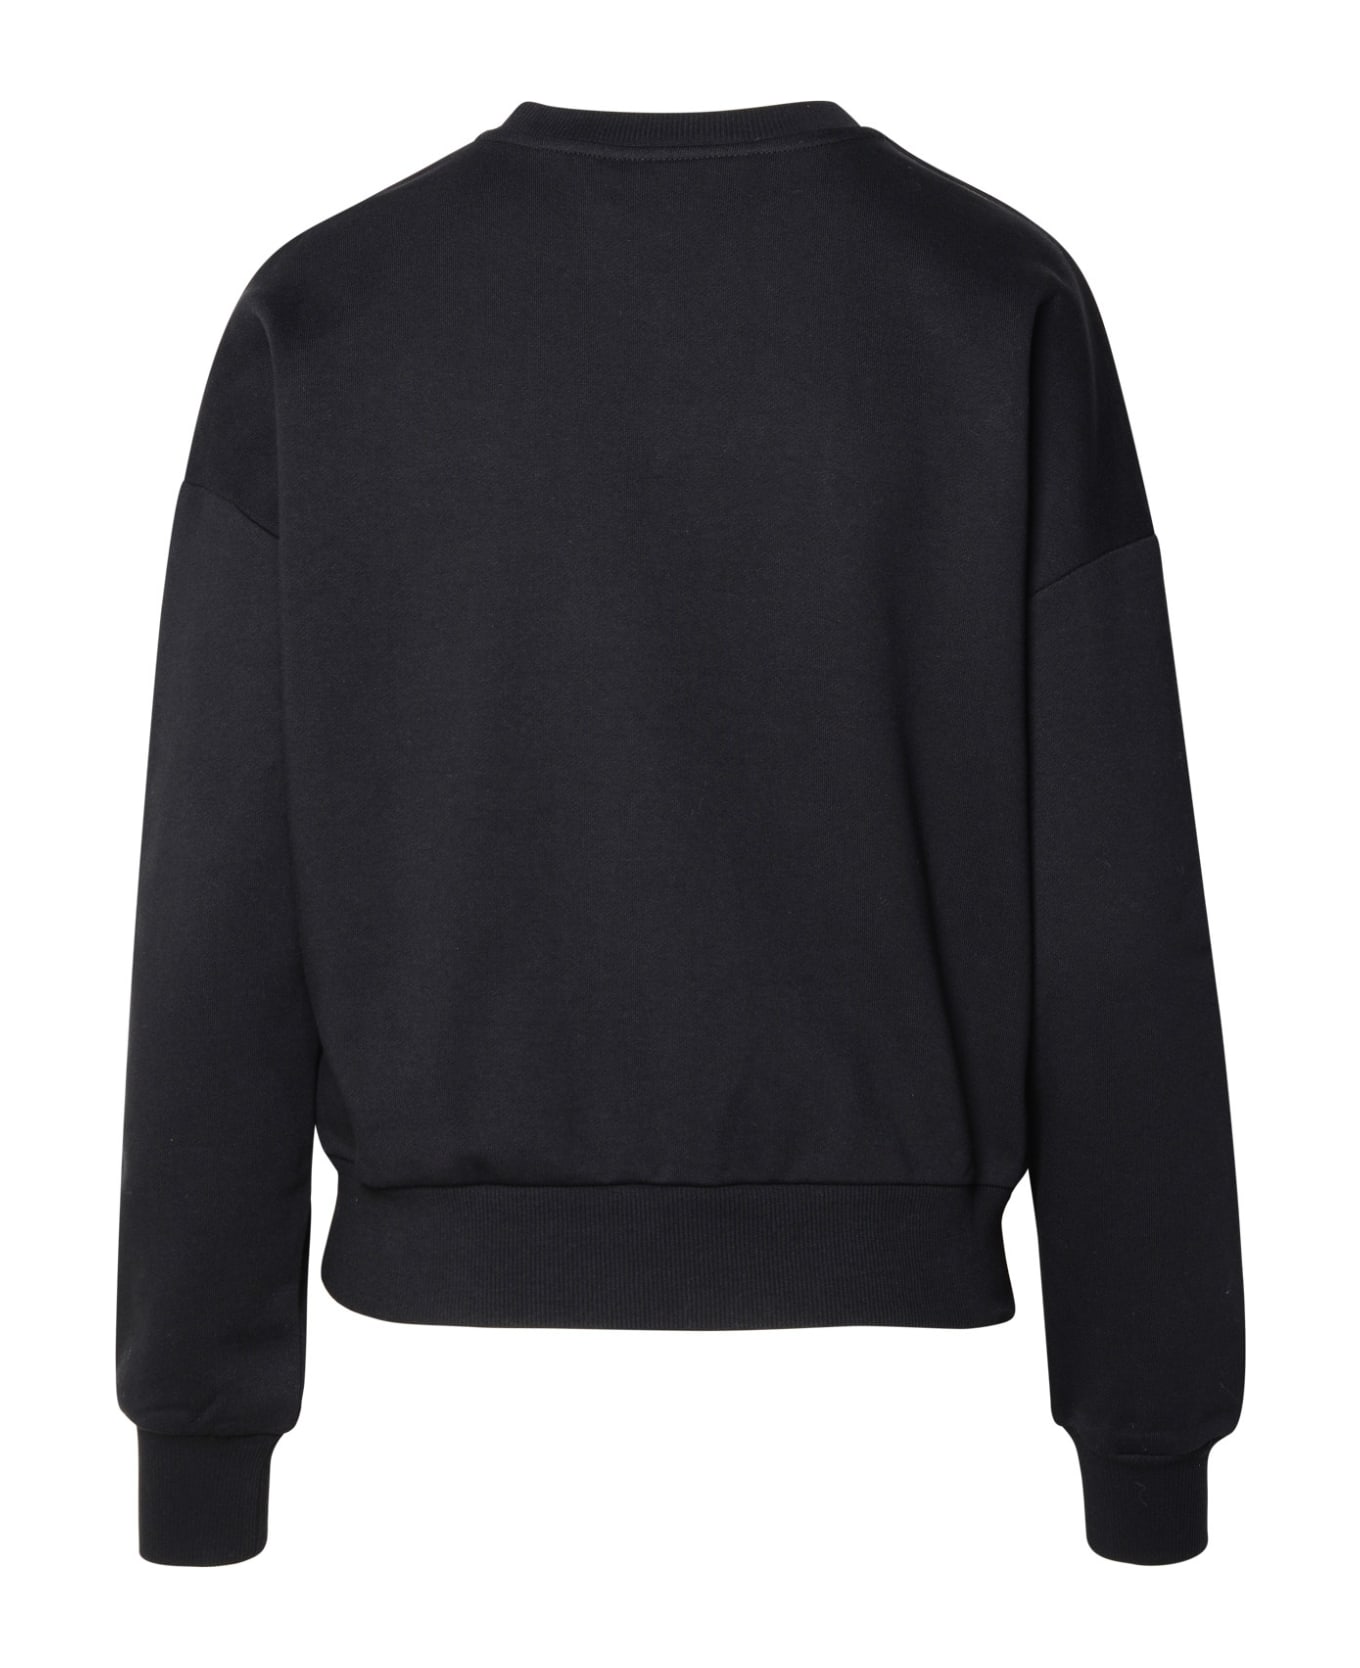 Chiara Ferragni Black Cotton Sweatshirt - Black